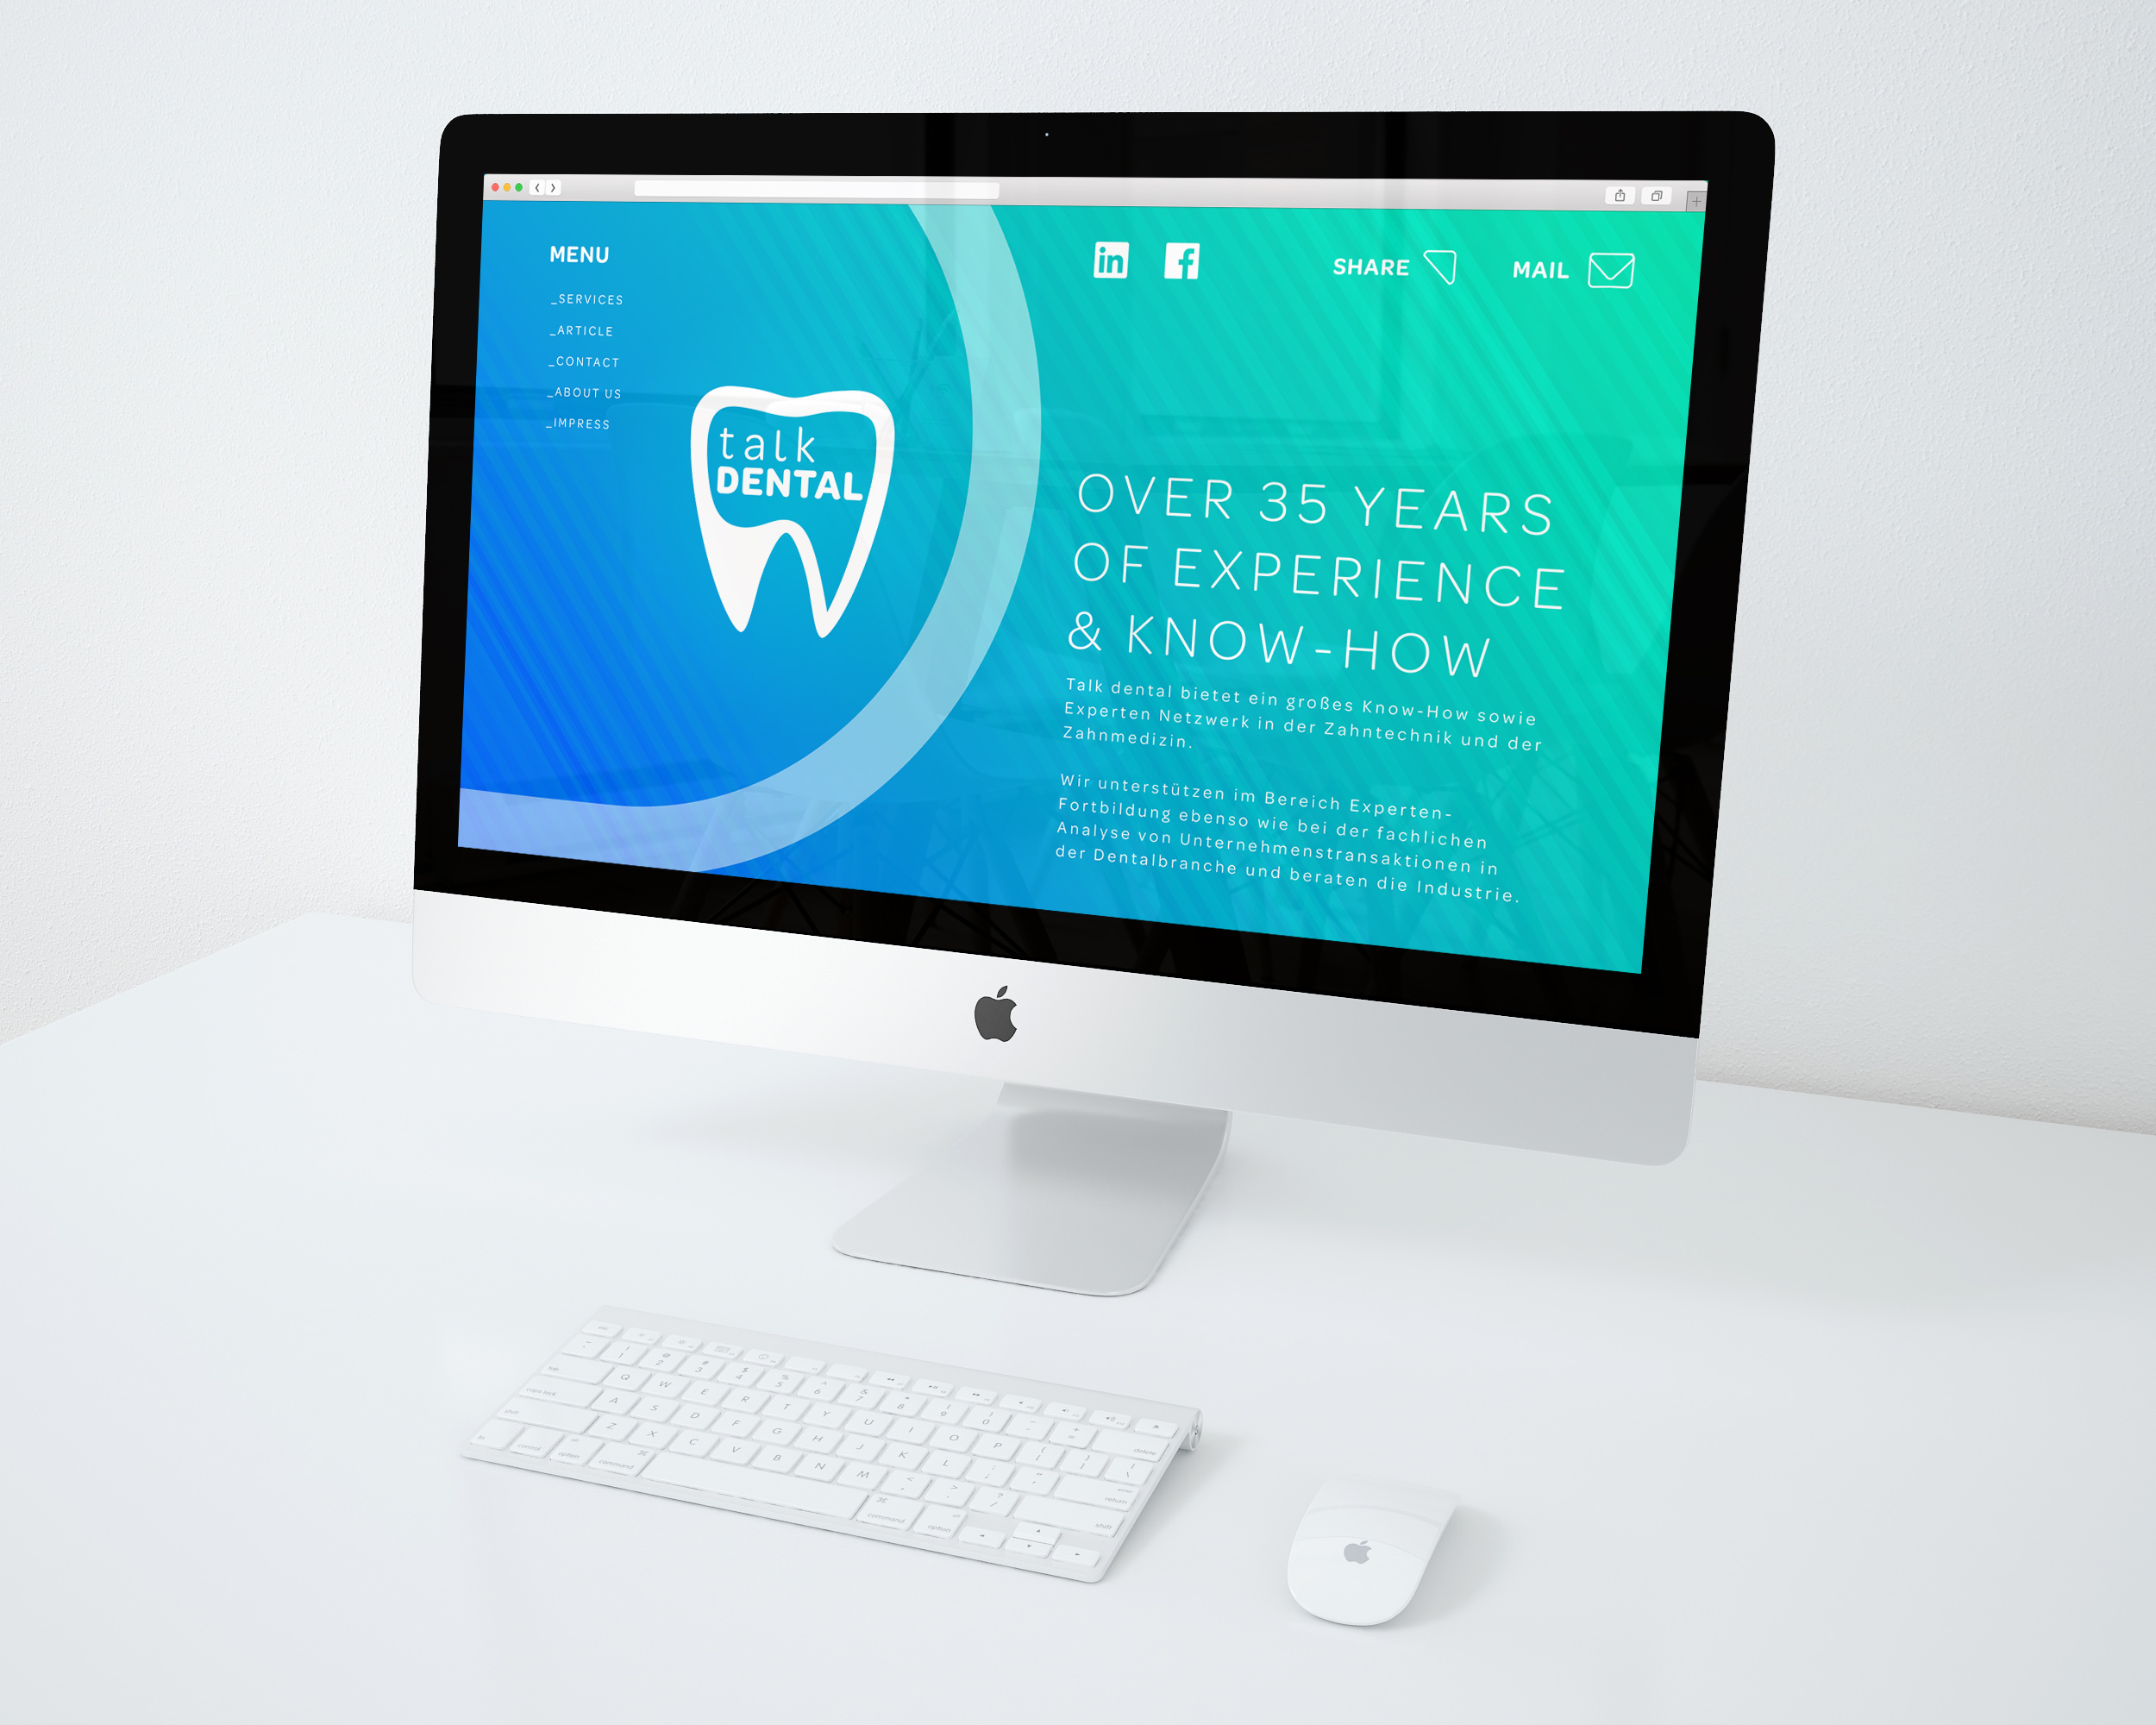 talk-dental-website-desktop